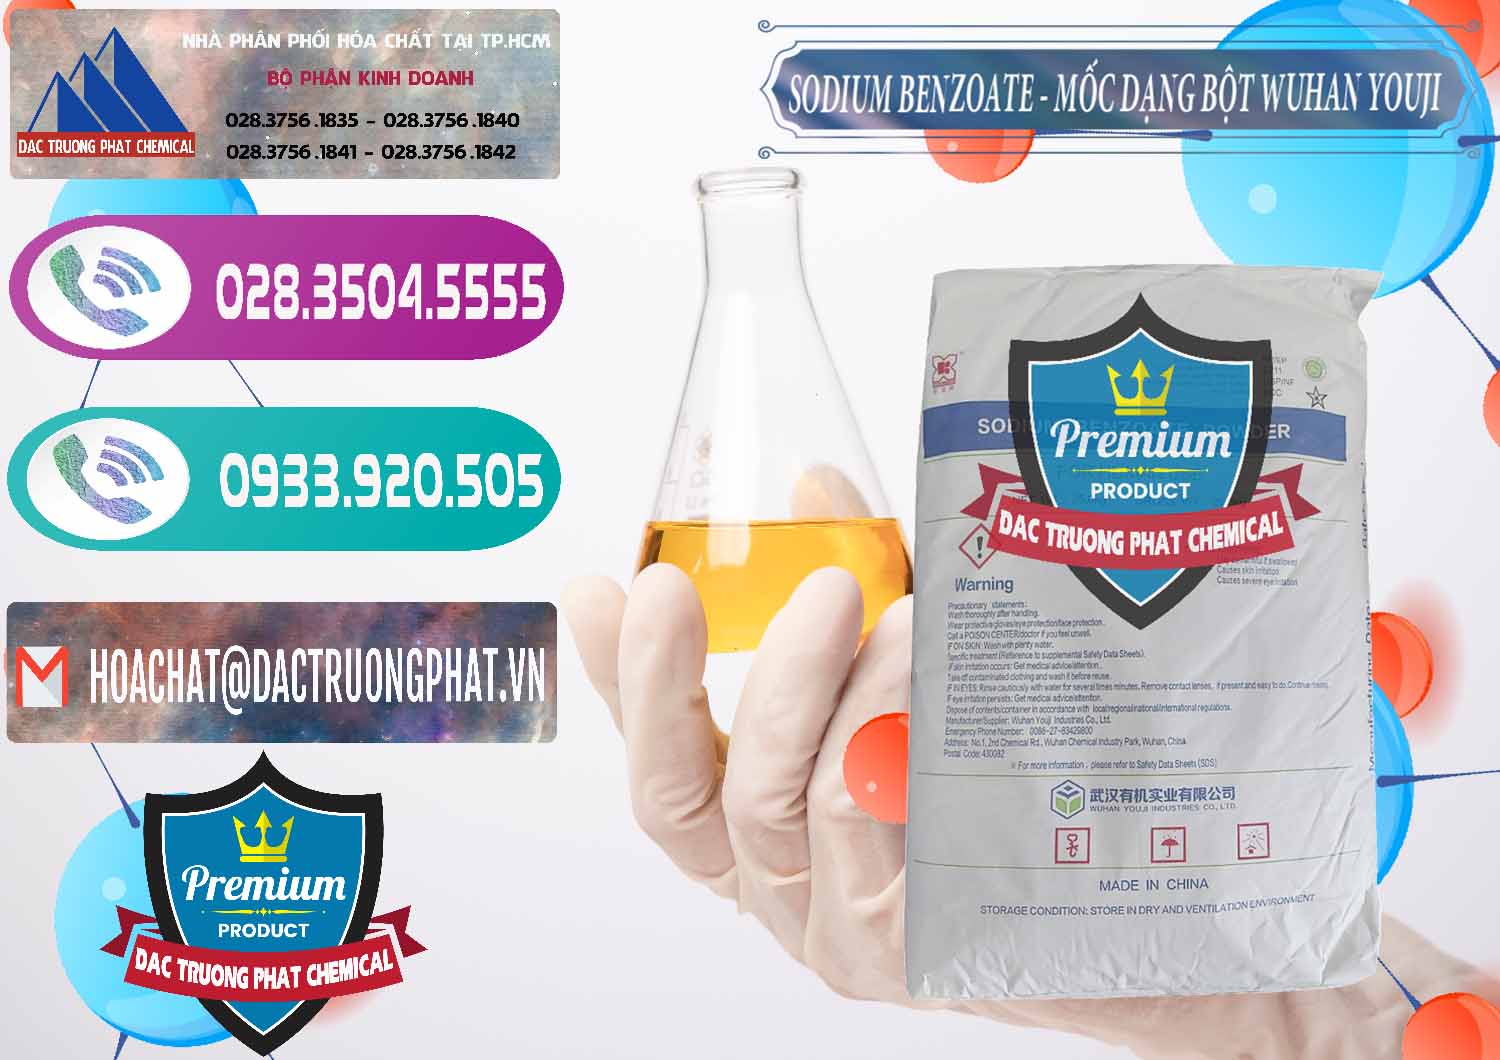 Đơn vị chuyên cung cấp - bán Sodium Benzoate - Mốc Dạng Bột Food Grade Wuhan Youji Trung Quốc China - 0275 - Cty chuyên kinh doanh ( phân phối ) hóa chất tại TP.HCM - hoachatxulynuoc.com